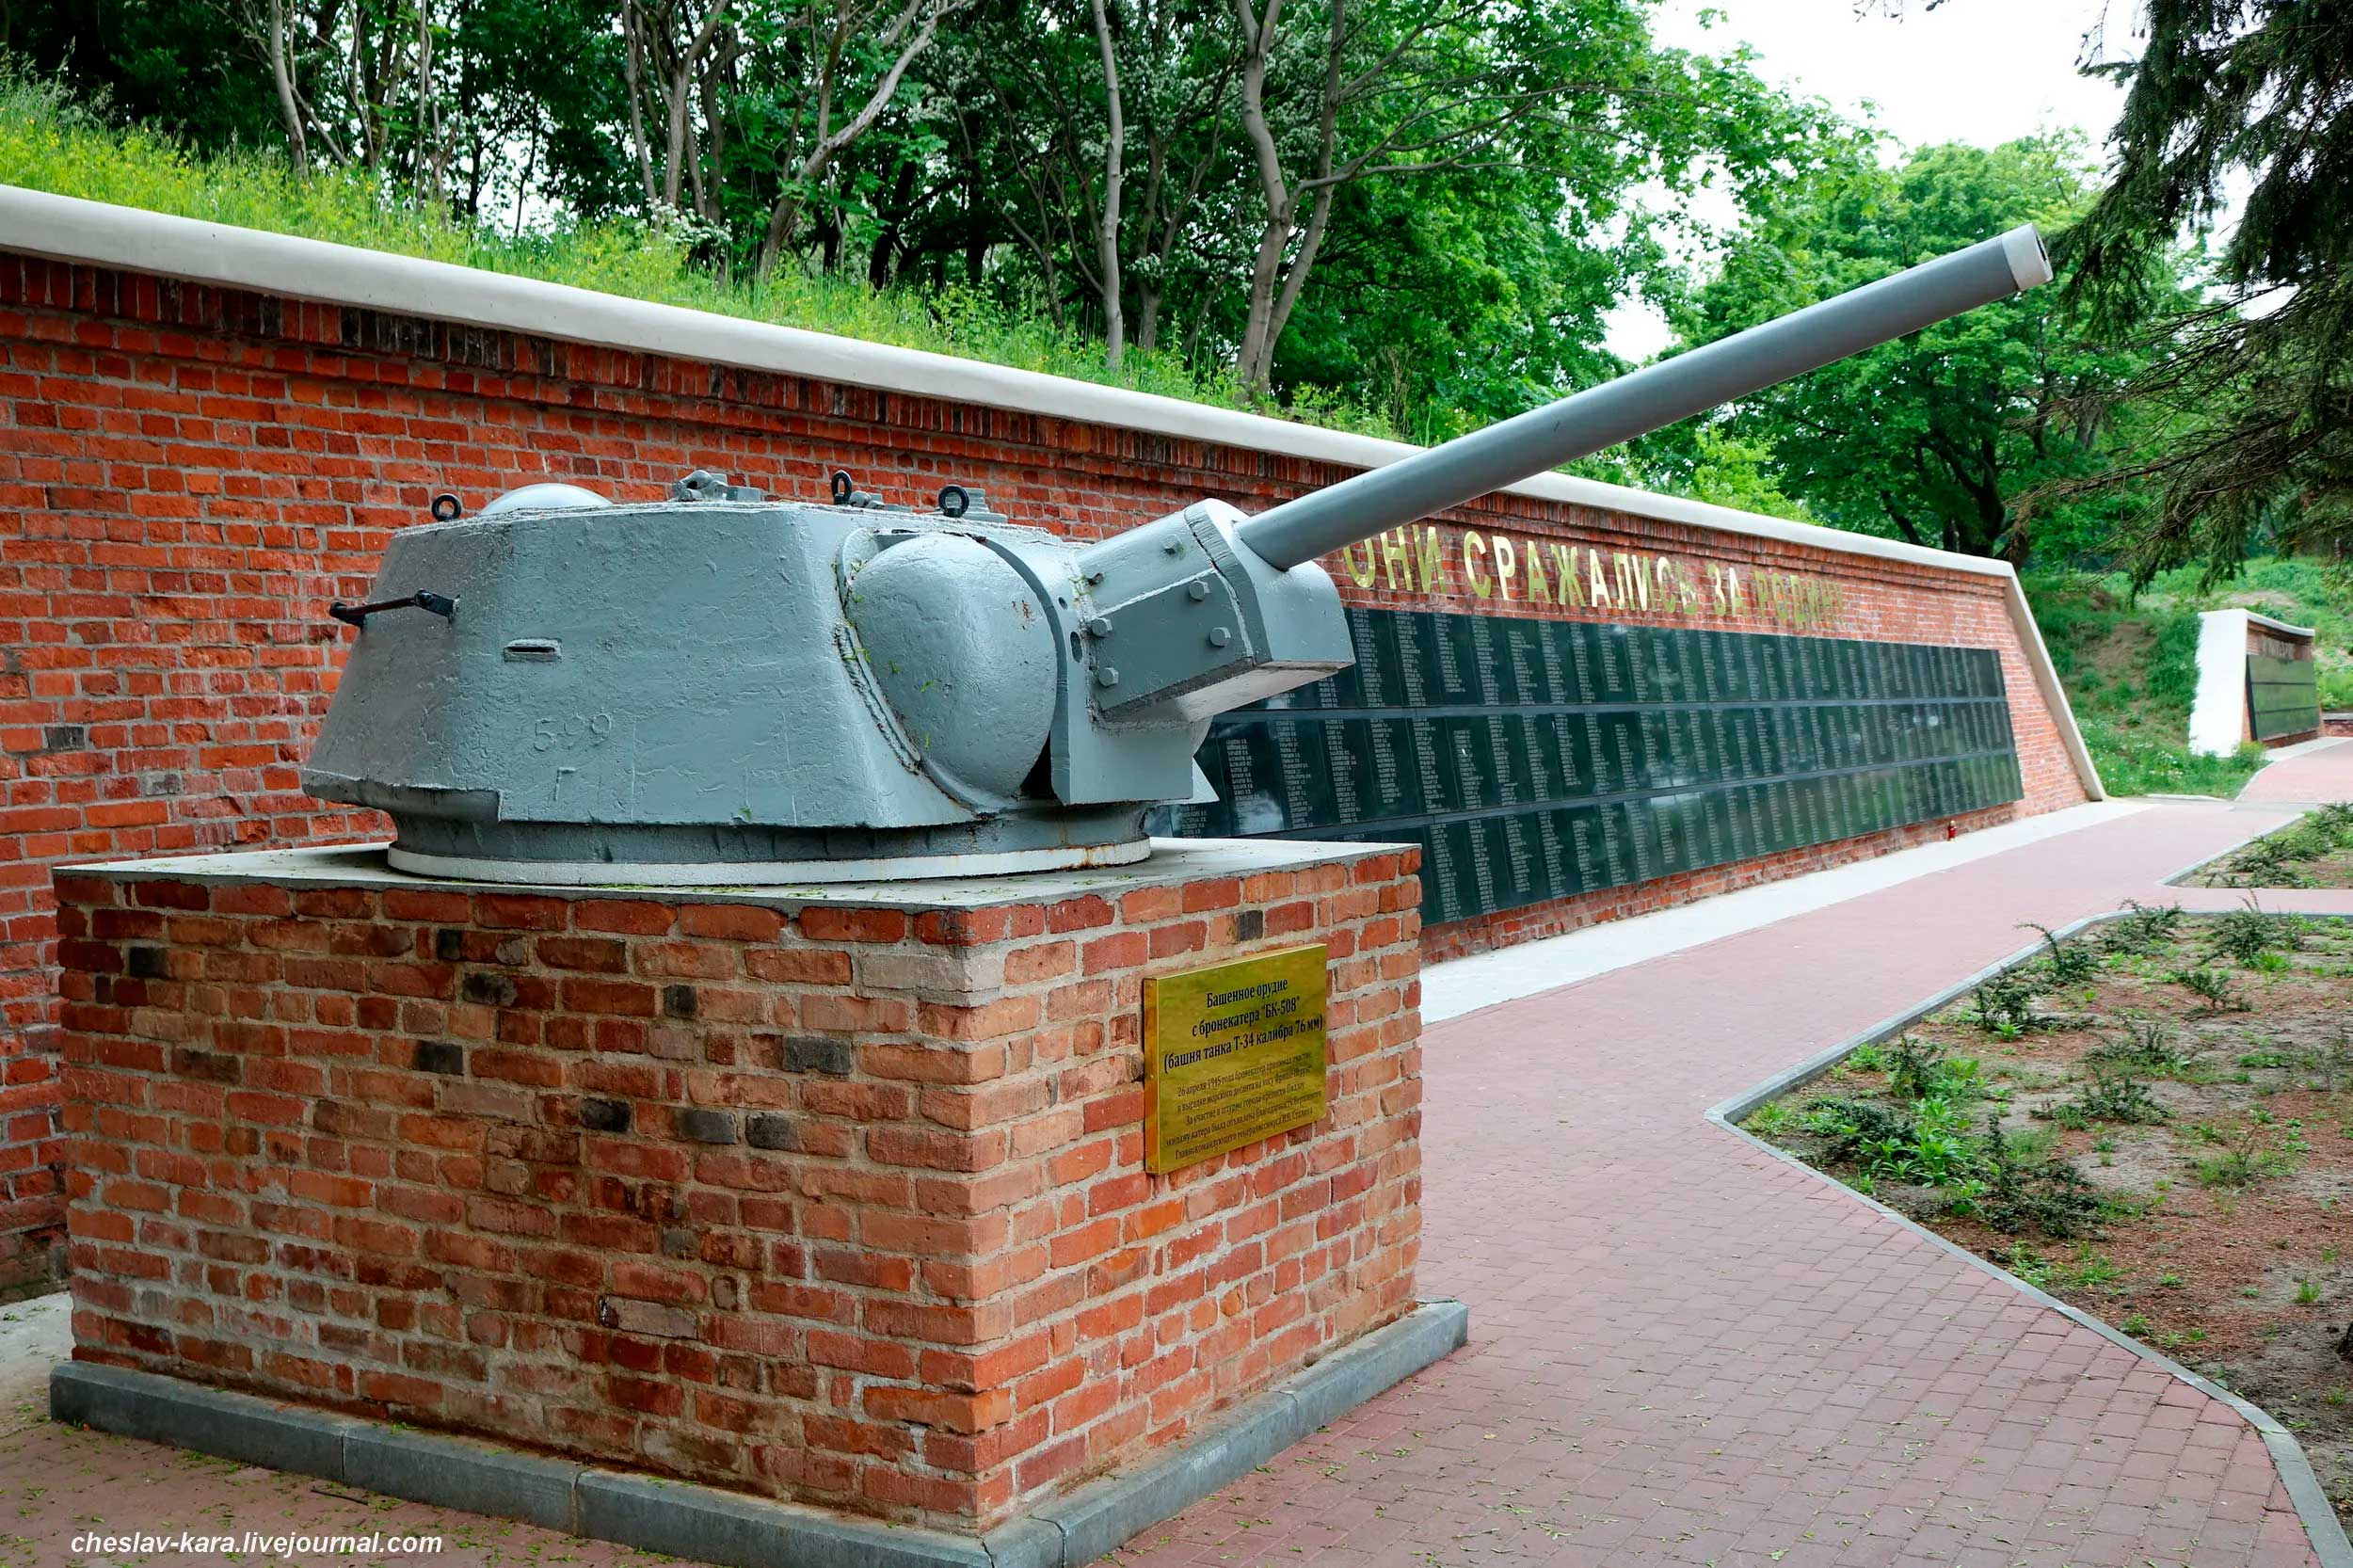 Башня от Т-34 с 76-мм пушкой Ф-34